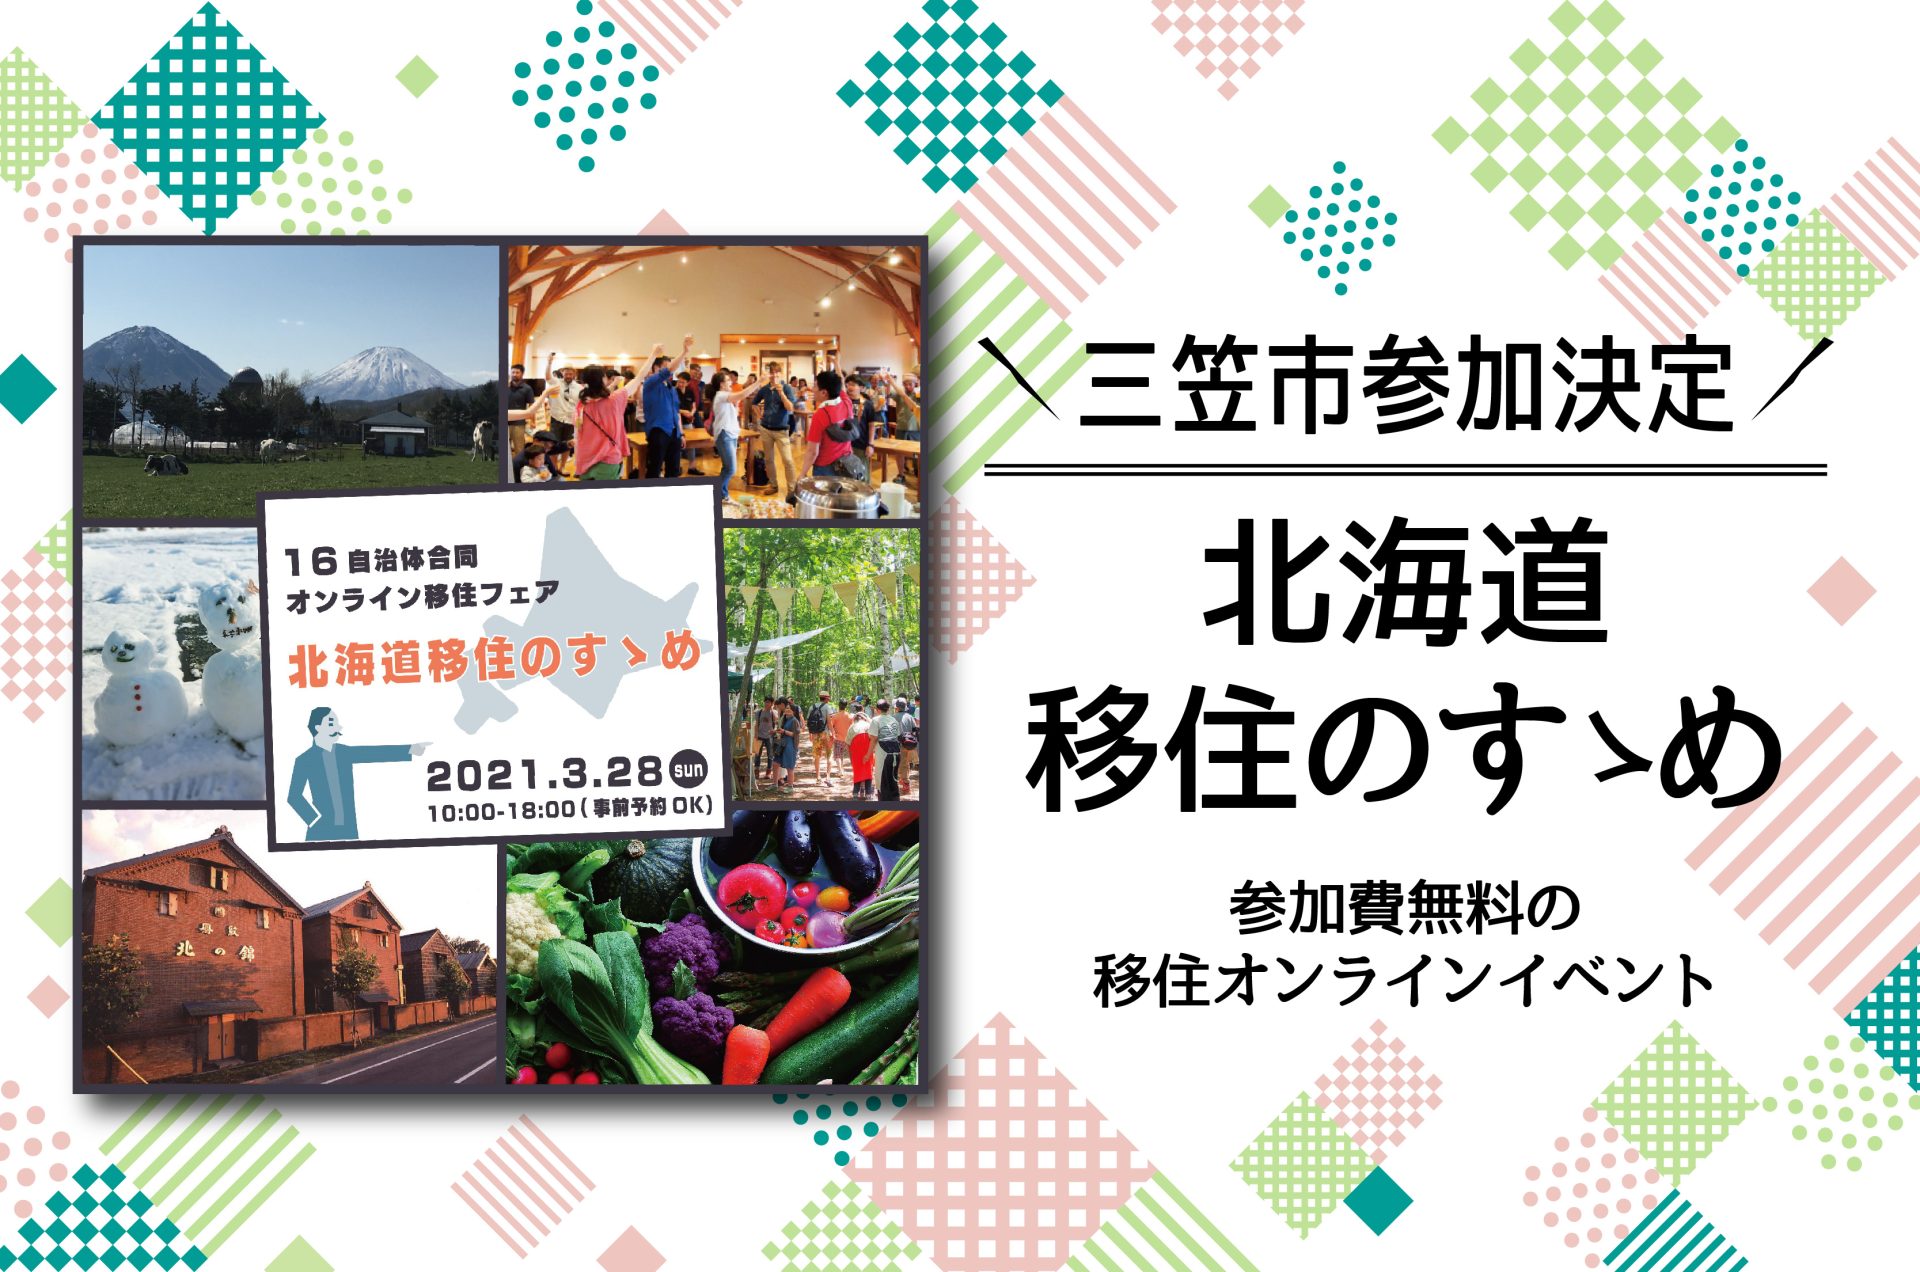 オンライン移住相談会「北海道移住のすゝめ」 | 地域のトピックス